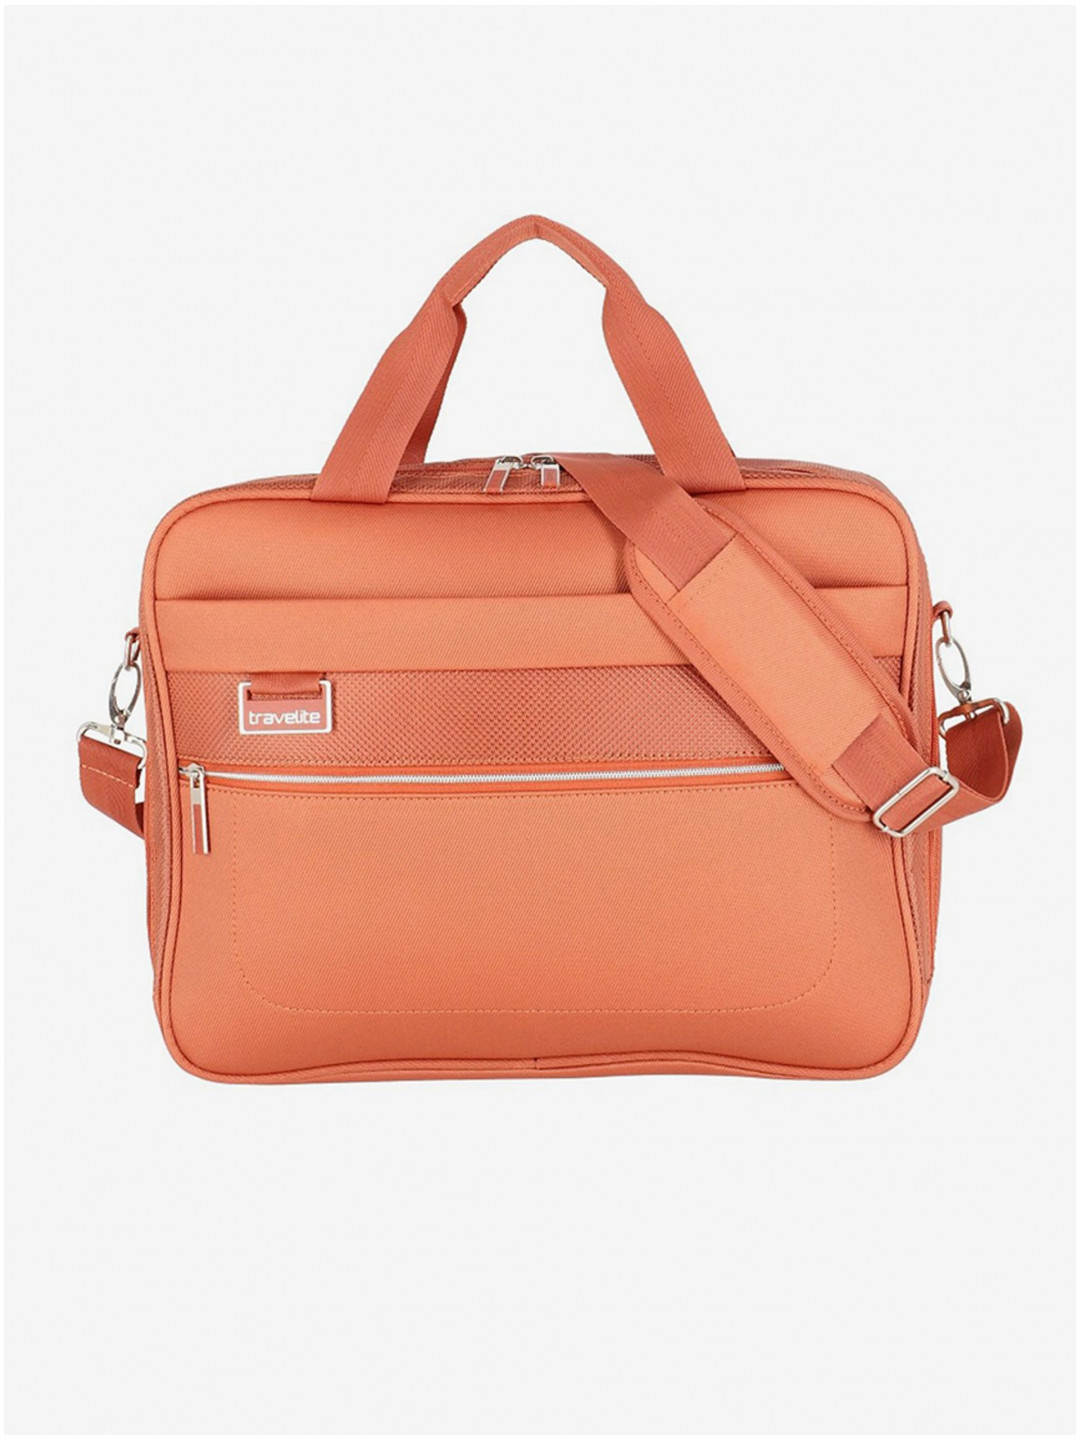 Oranžová cestovní taška Travelite Miigo Board bag Copper chutney